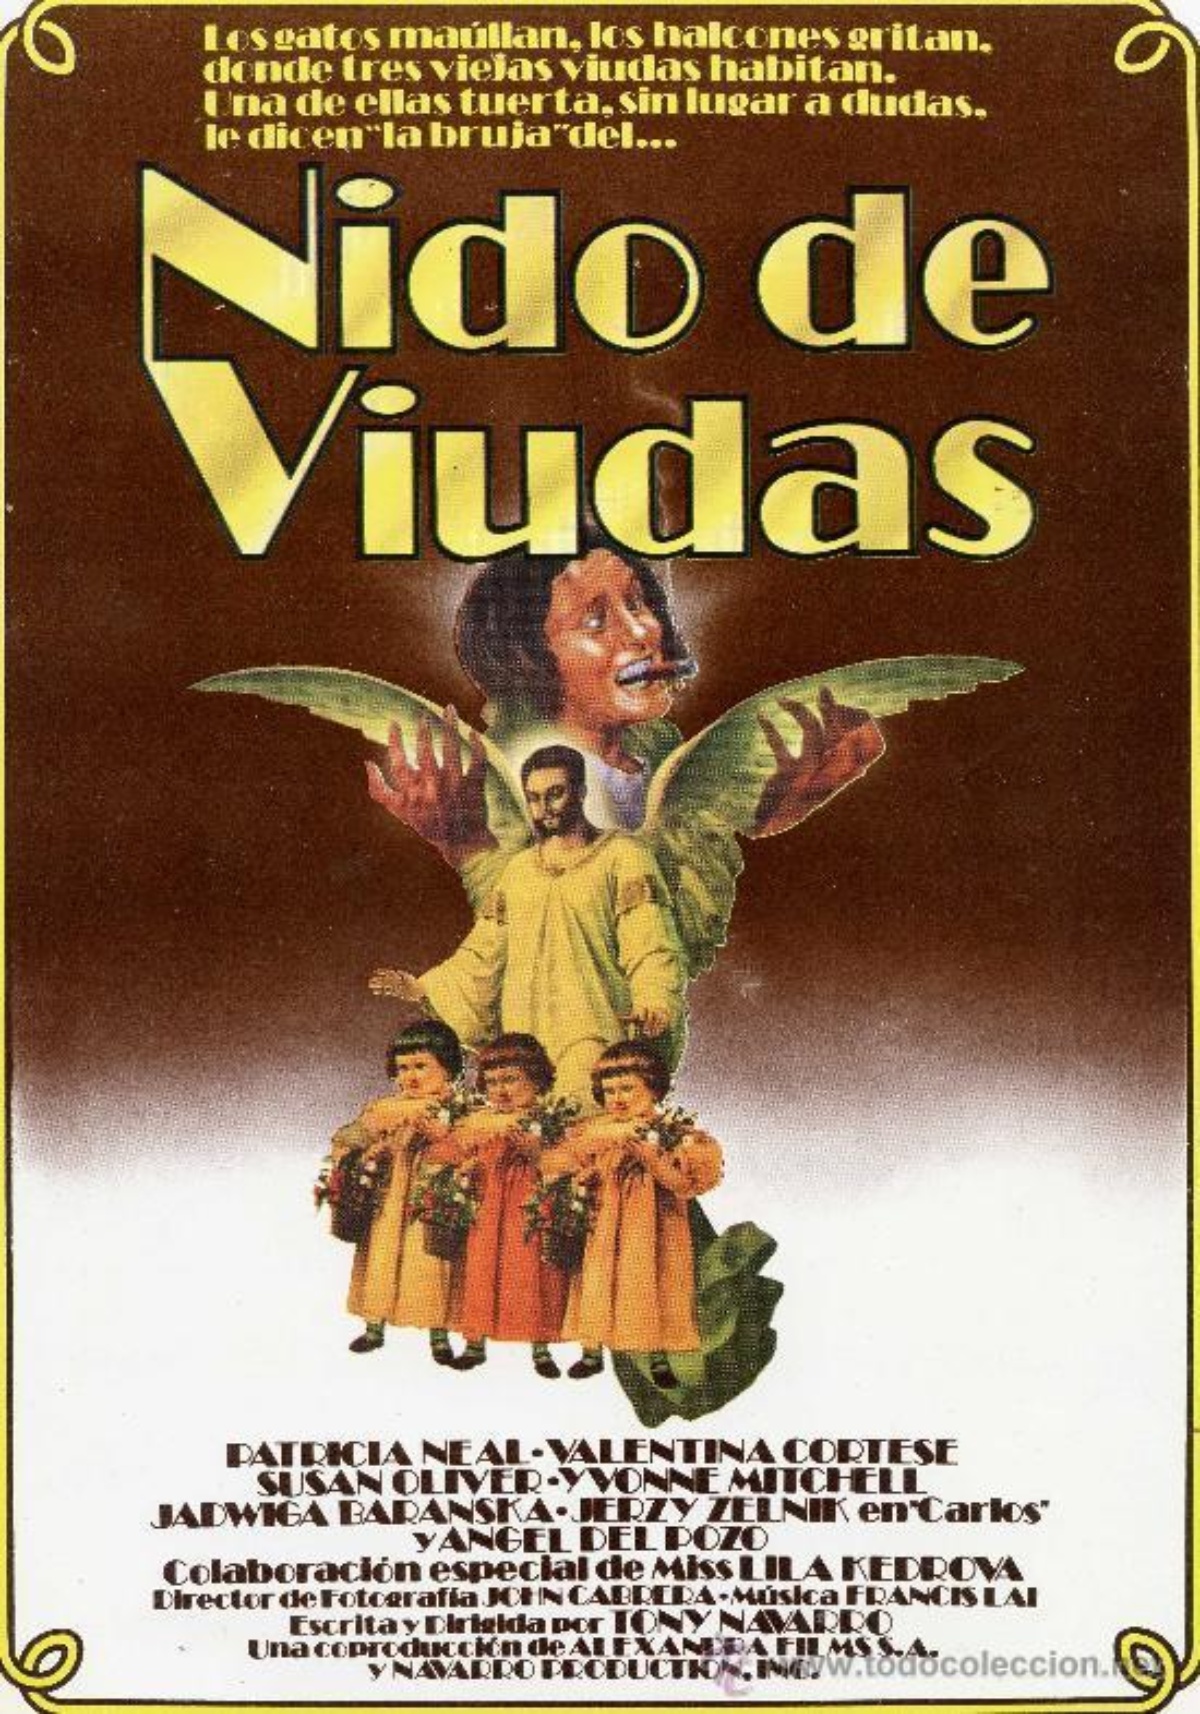 Nido de viudas (1977) Screenshot 2